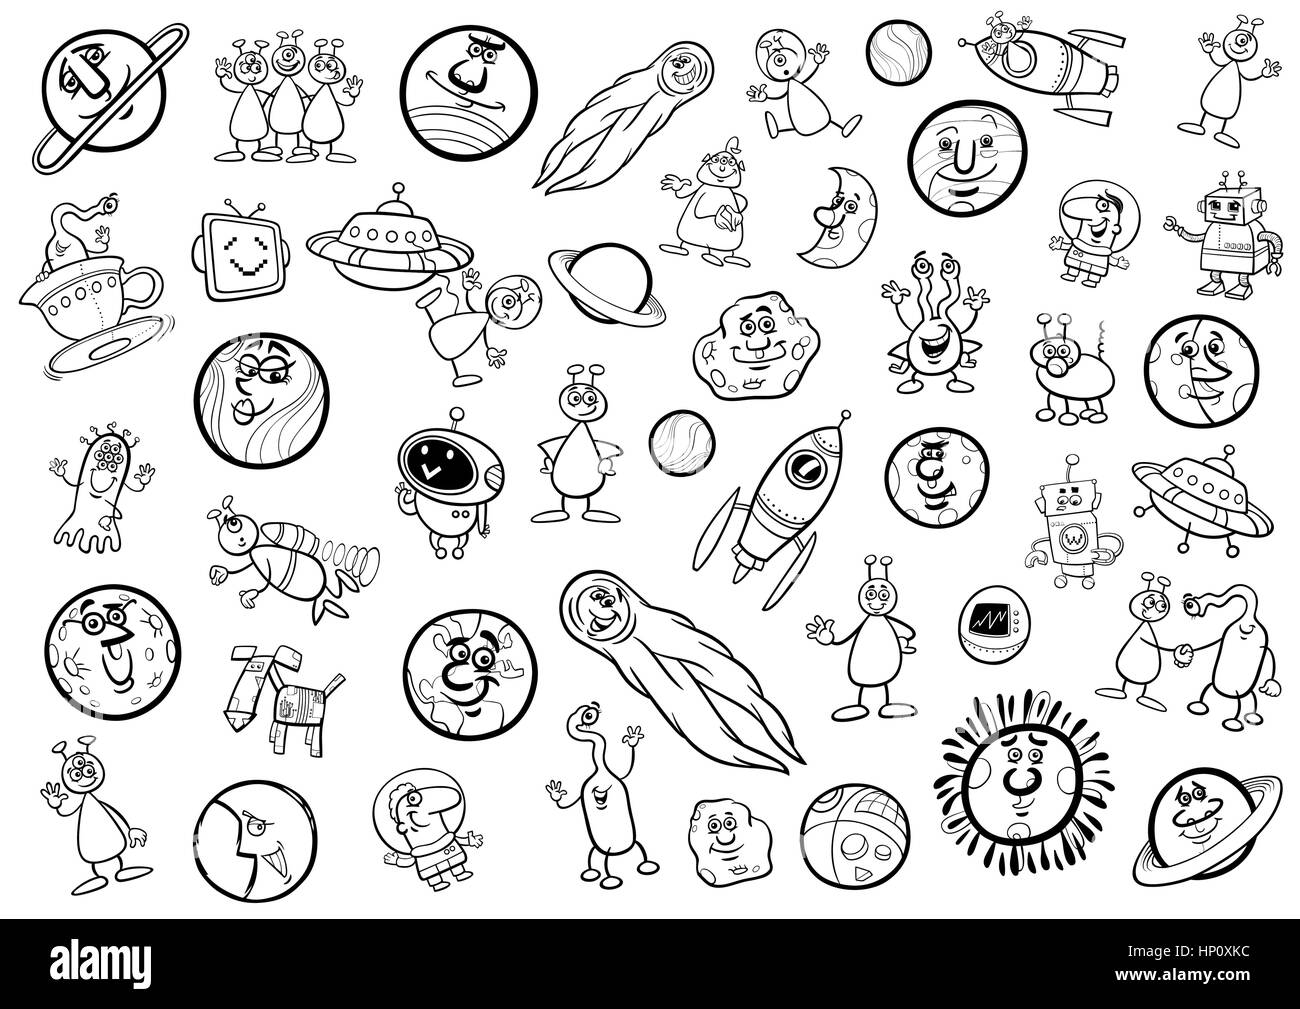 Schwarz / Weiß Cartoon Darstellung von Objekten im Weltraum und Fantasiefiguren Set Malvorlagen Stock Vektor